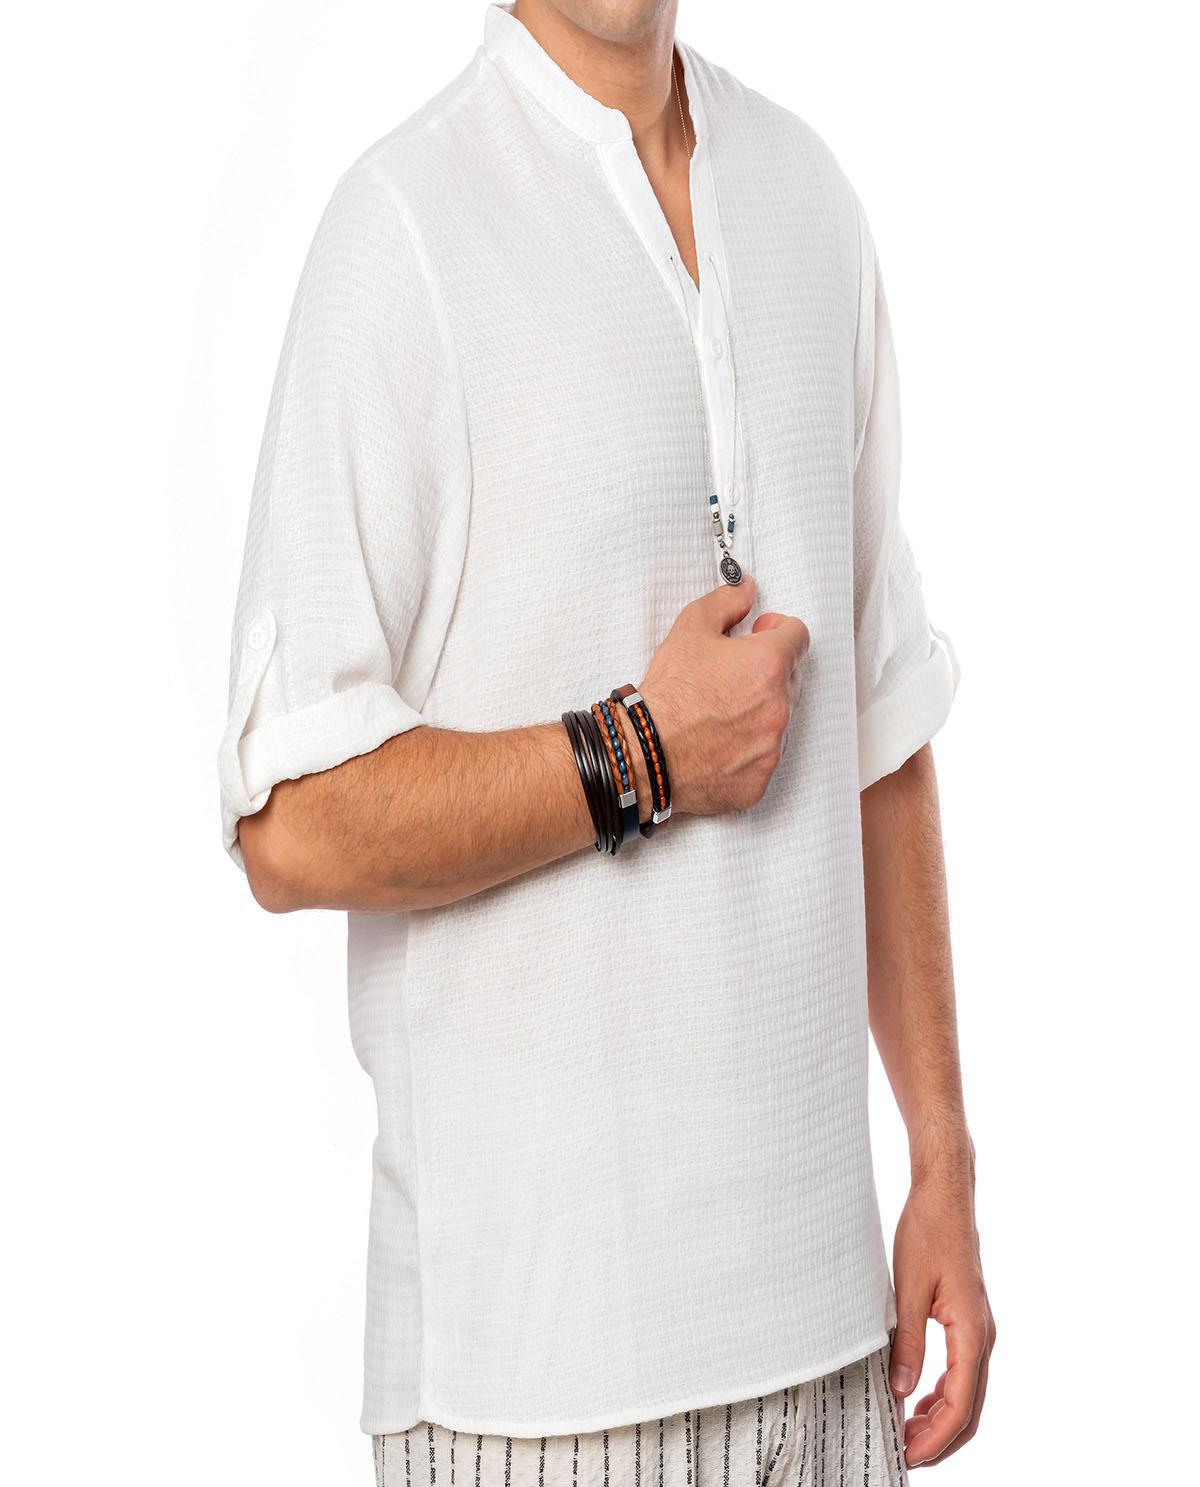 T-shirt manches longues blanc avec accessoire en coton